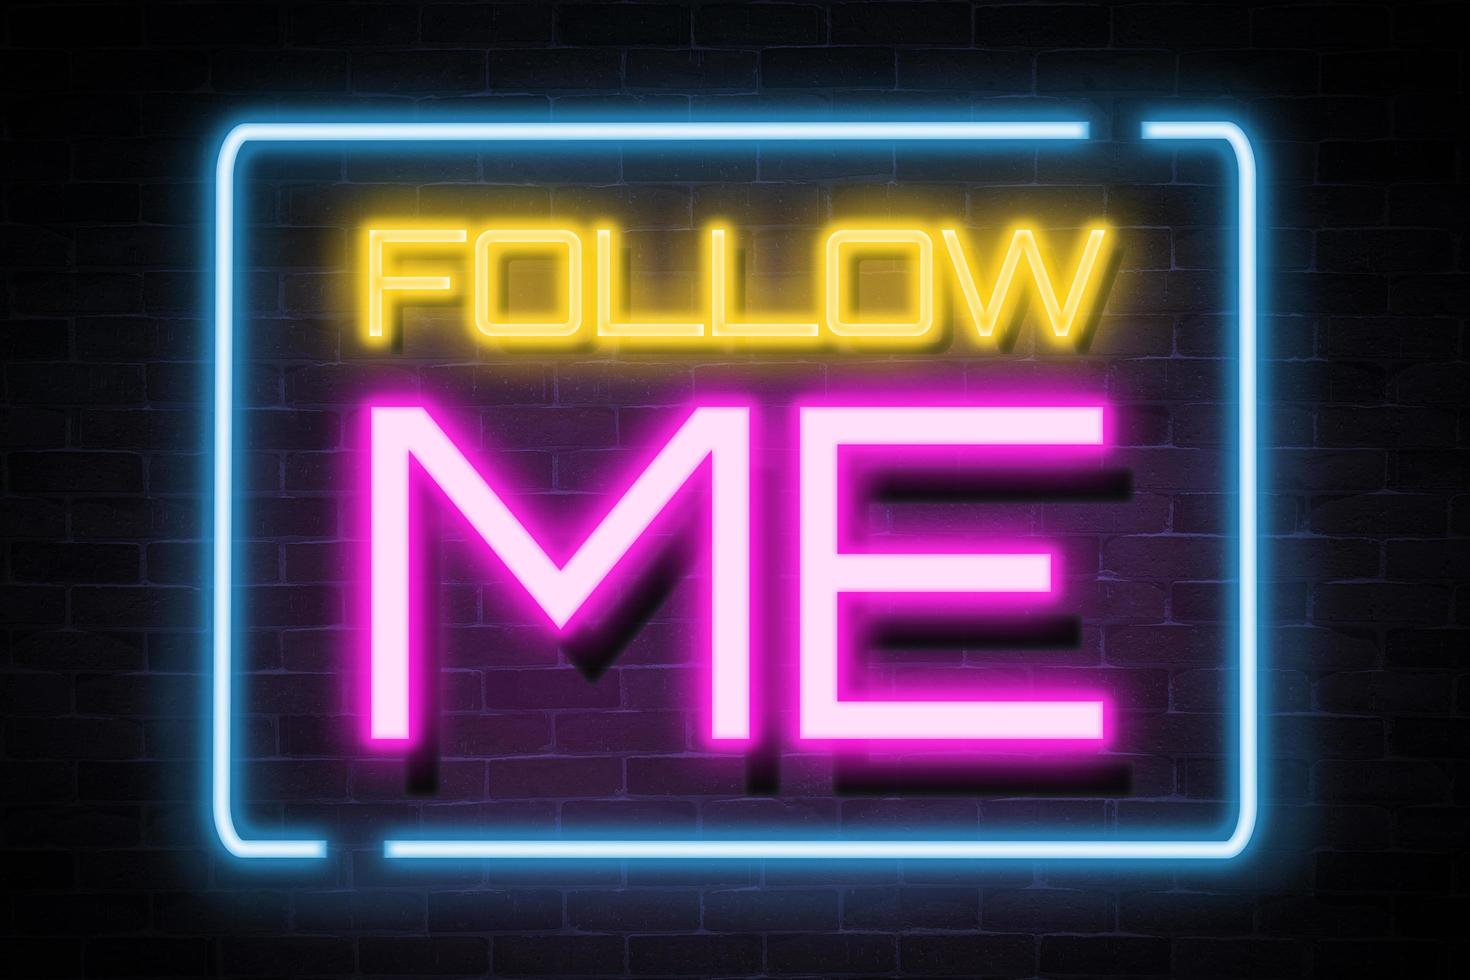 Follow me neon banner, light signboard. photo